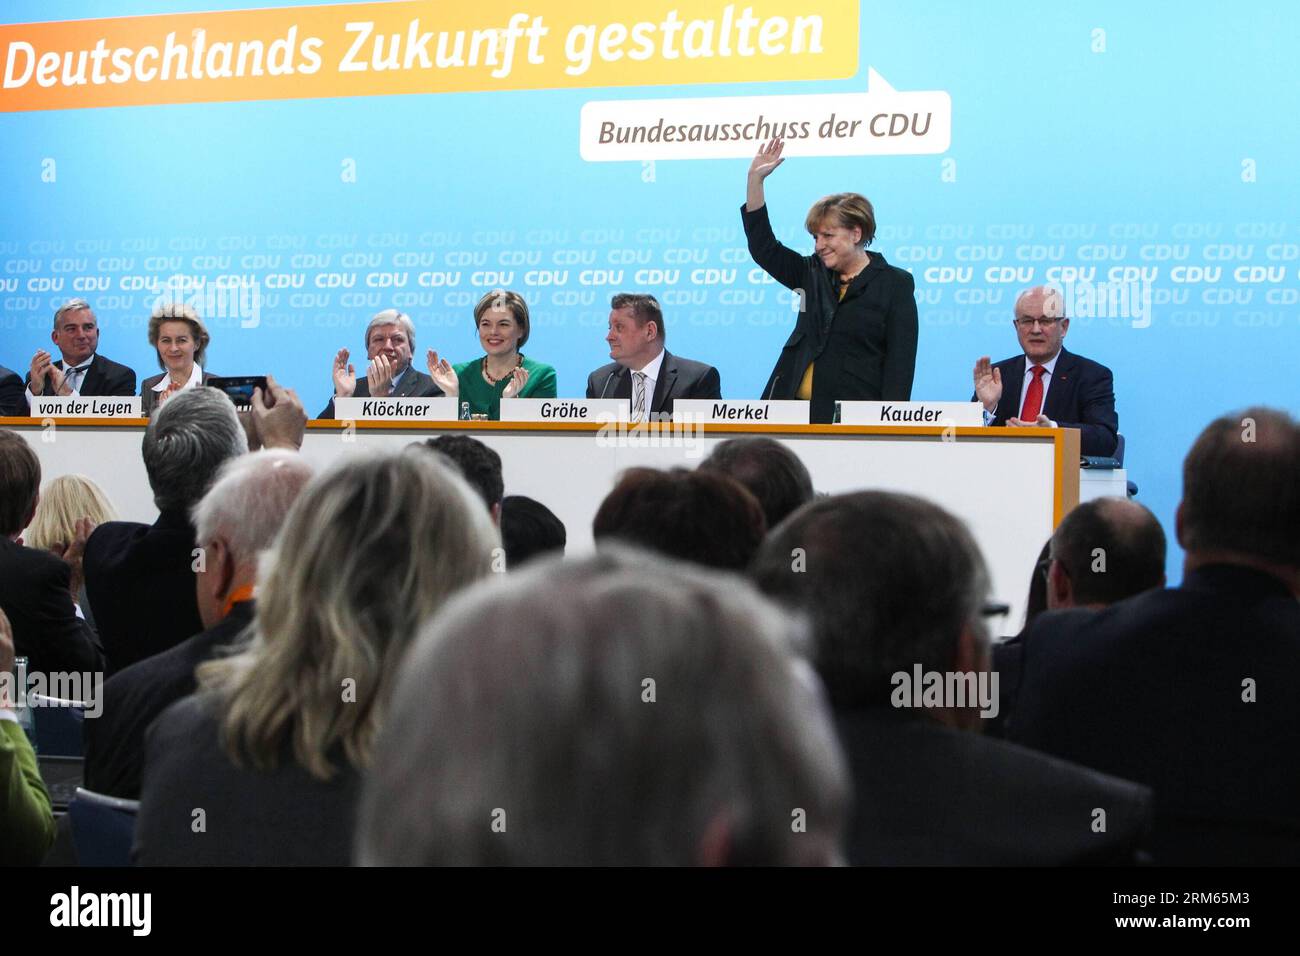 Bildnummer : 60811742 Datum : 09.12.2013 Copyright : imago/Xinhua (131209) -- BERLIN, 9 déc. 2013 (Xinhua) -- la chancelière allemande Angela Merkel (2e R) fait signe après un discours alors que les autres délégués applaudissent pour elle lors d'une conférence de l'Union chrétienne-démocrate allemande (CDU) à Berlin, en Allemagne, le 9 décembre 2013. Le bloc conservateur de la CDU d Angela Merkel a voté pour l alliance avec le Parti social-démocrate (SPD) de centre-gauche lors d une petite conférence du parti lundi. (Xinhua/Zhang Fan) ALLEMAGNE-BERLIN-CDU-ACCORD DE COALITION PUBLICATIONxNOTxINxCHN Politik People xas x0x 2013 quer premiumd Banque D'Images